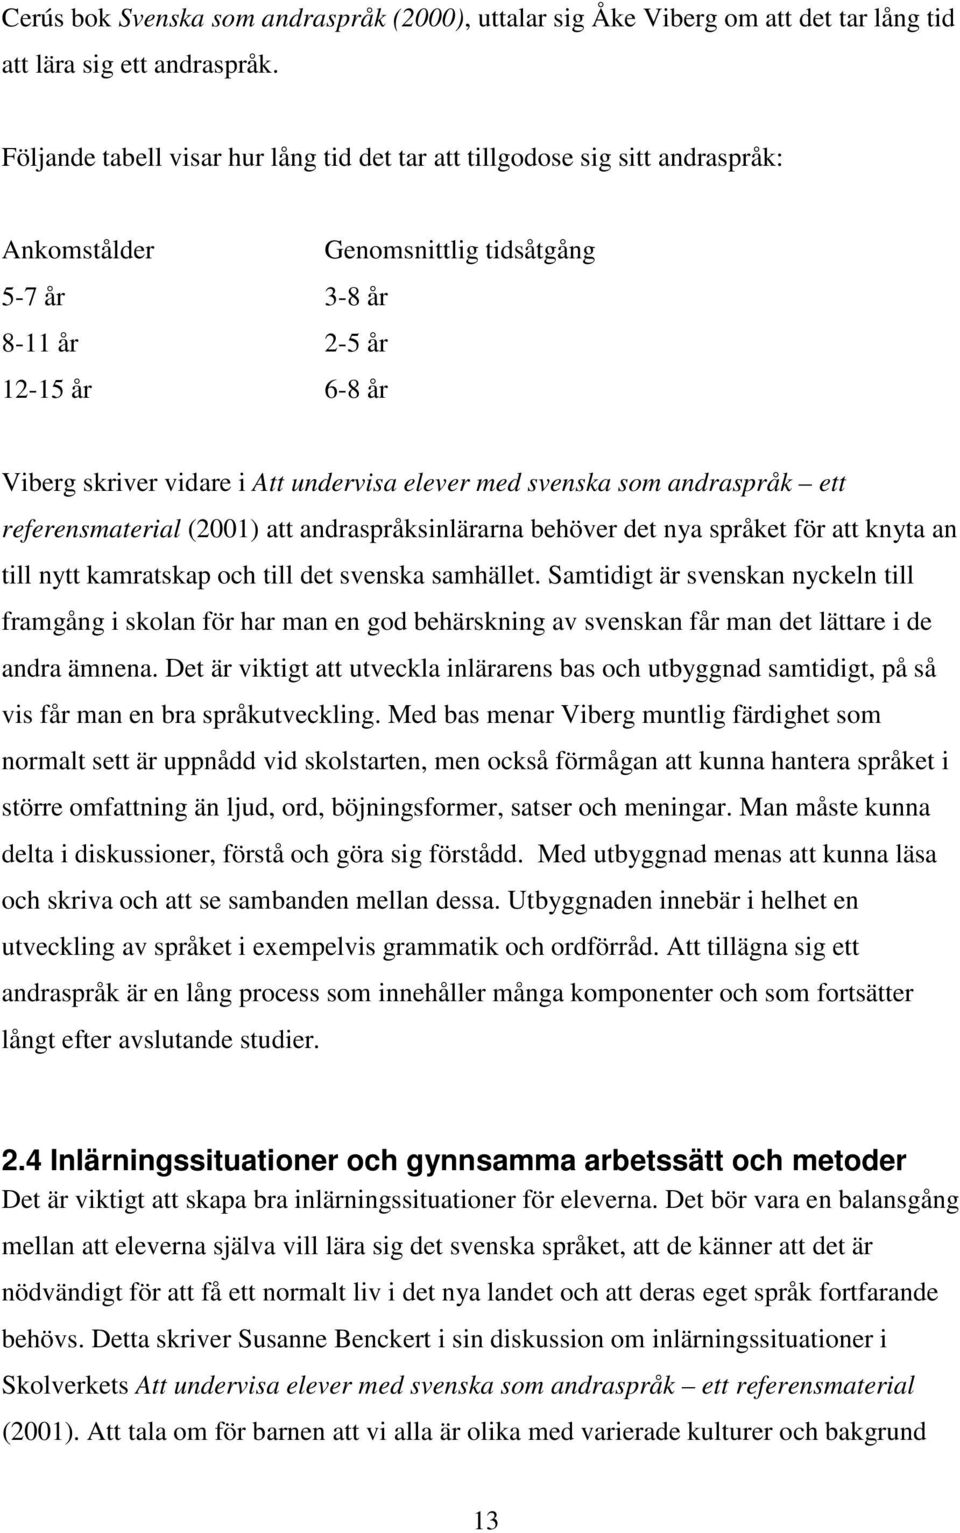 elever med svenska som andraspråk ett referensmaterial (2001) att andraspråksinlärarna behöver det nya språket för att knyta an till nytt kamratskap och till det svenska samhället.